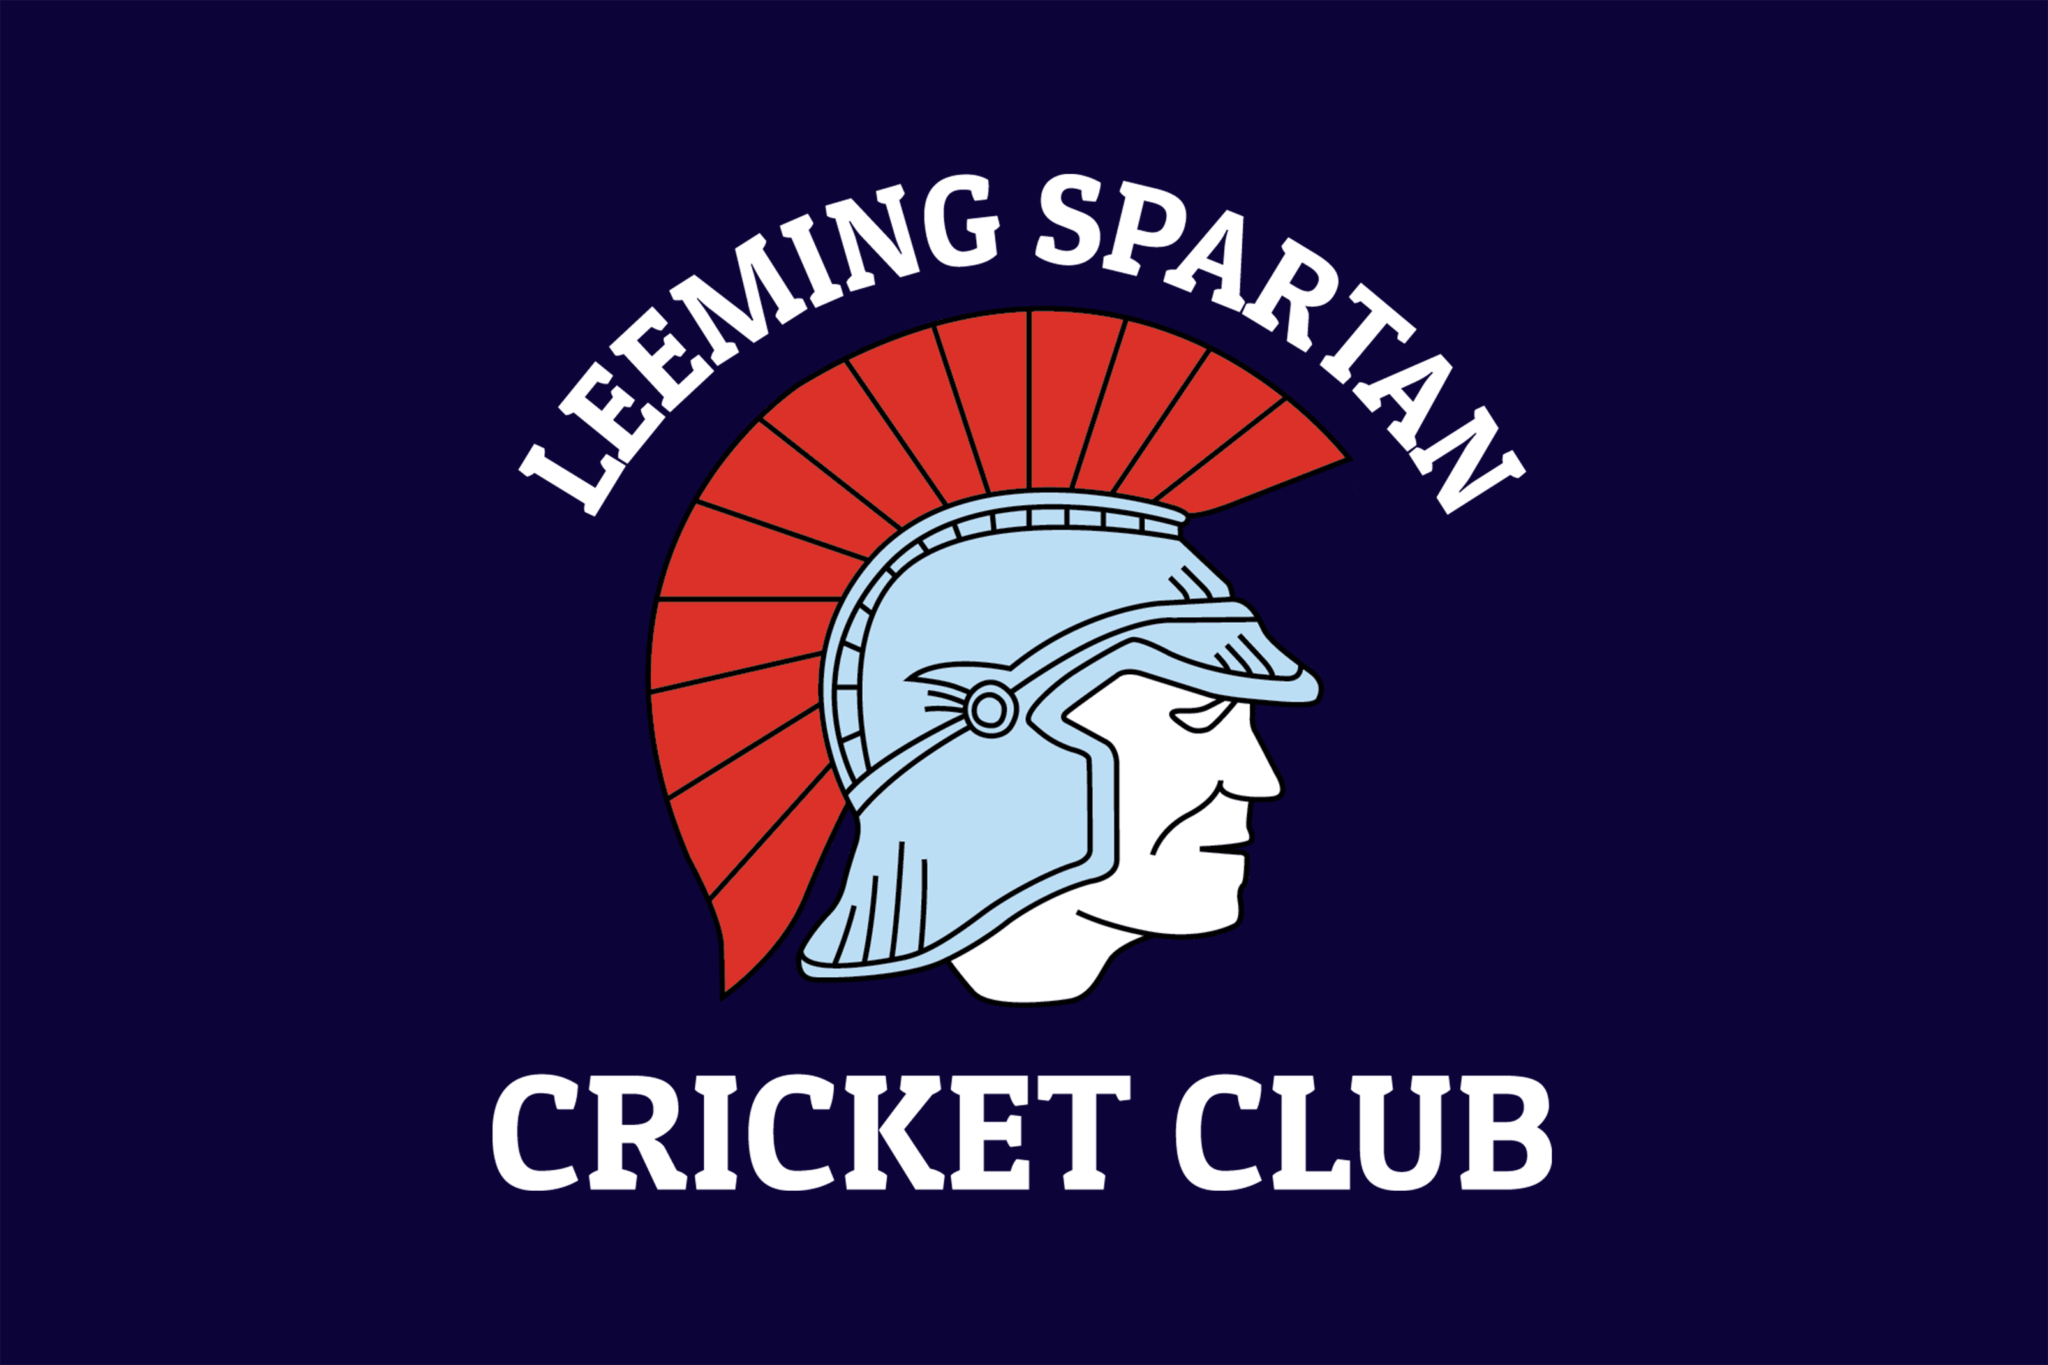 Spartan Flag Logo - The Spartan Flag. Leeming Spartan Cricket Club